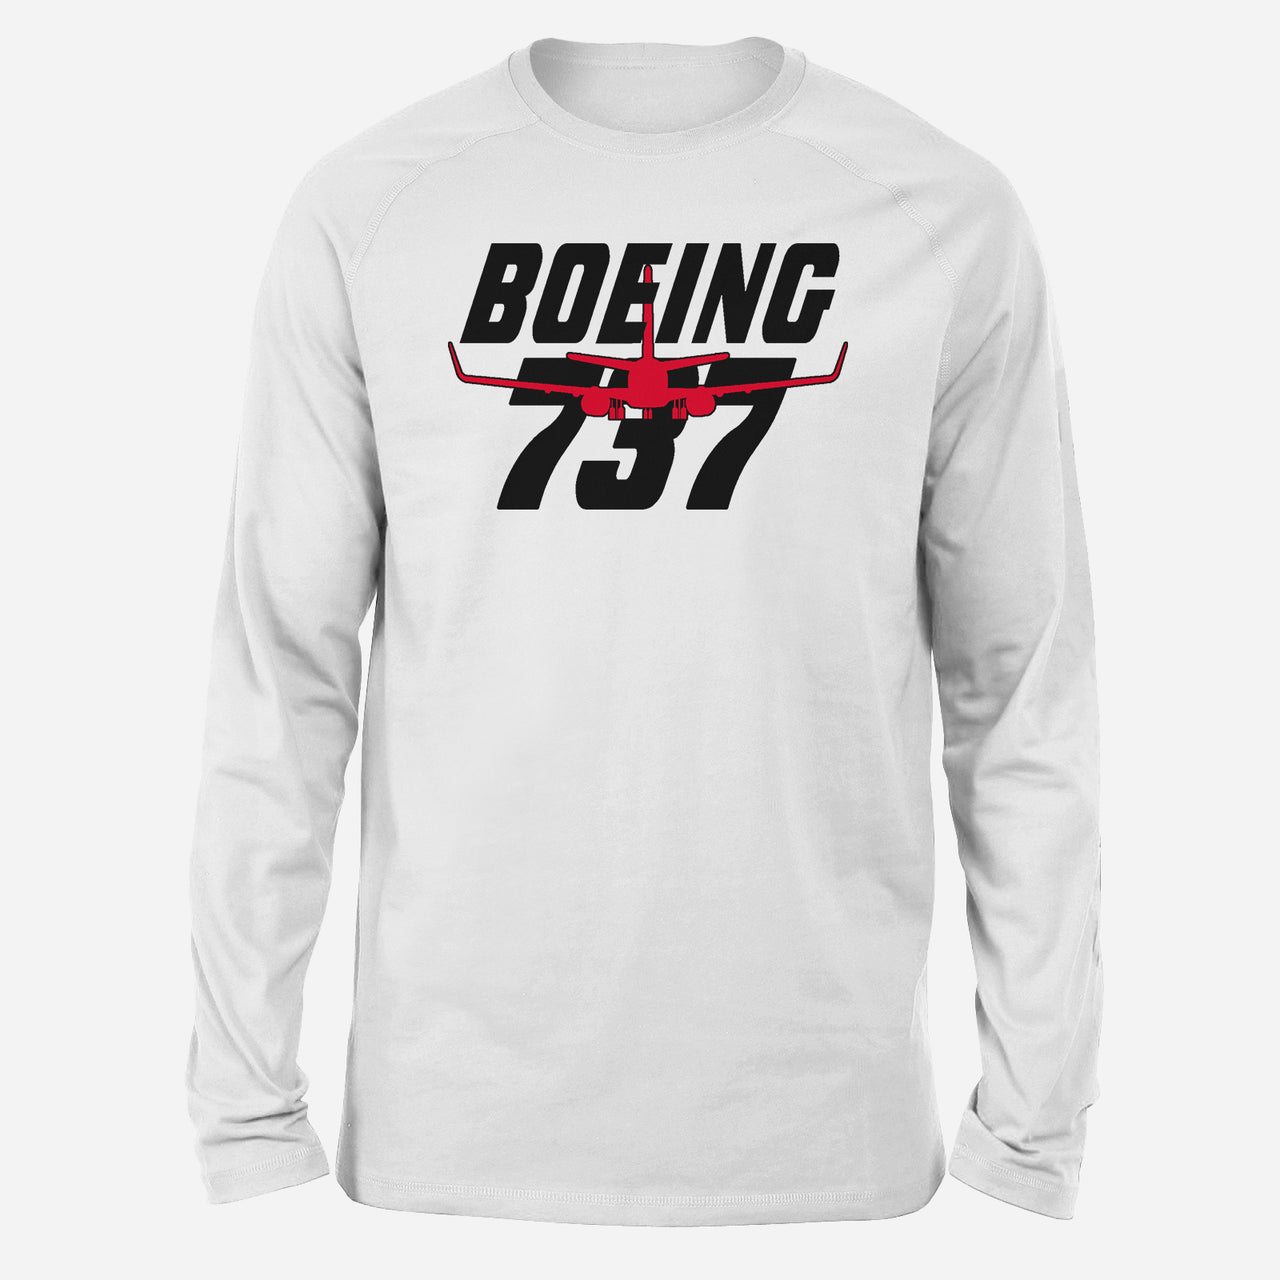 Amazing Boeing 737 Designed Long-Sleeve T-Shirts